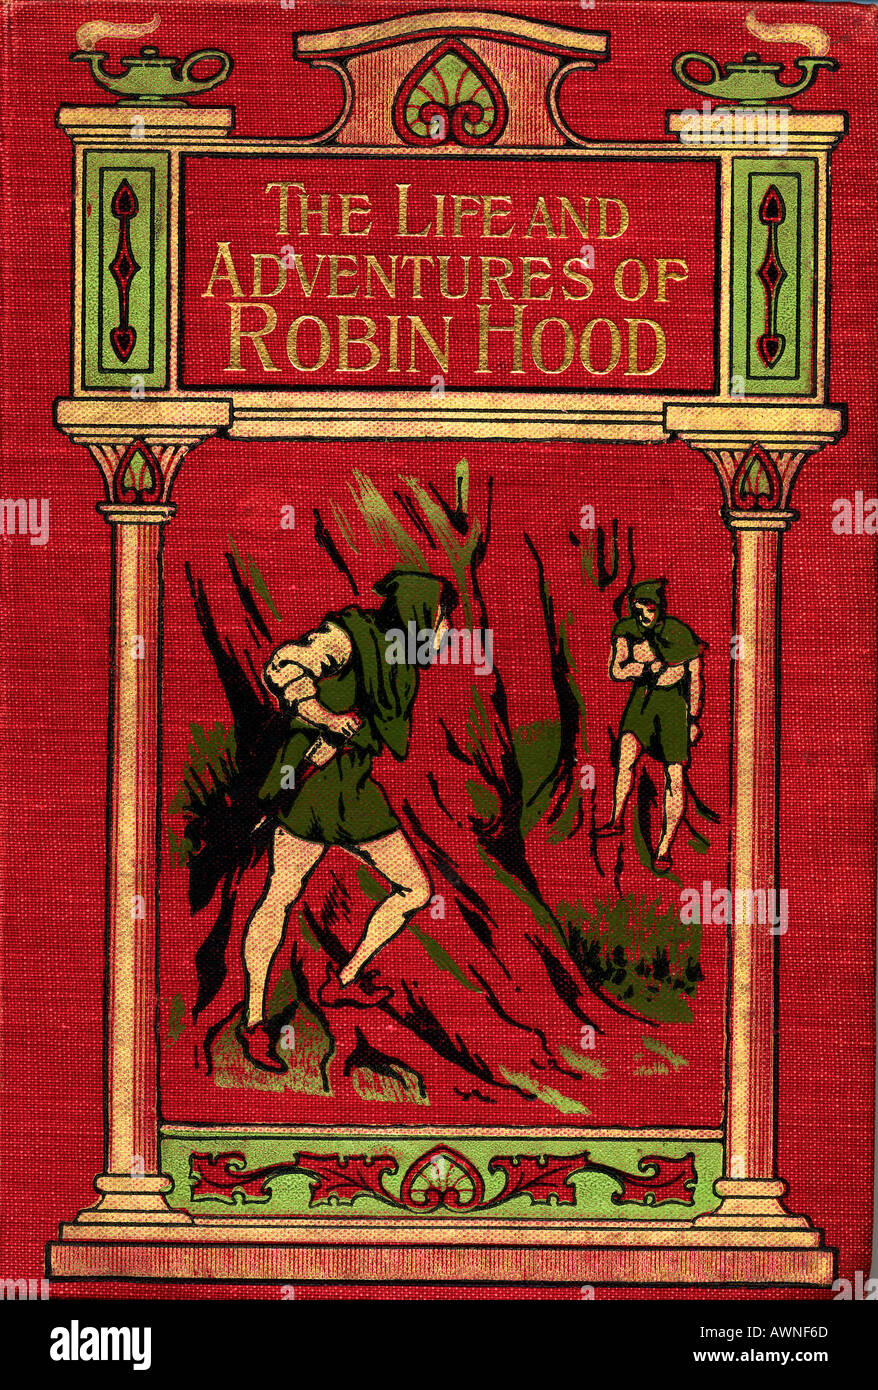 La vida y aventuras de Robin Hood. Portada del libro del mismo título por John B. Marsh, publicado alrededor de 1900. Foto de stock